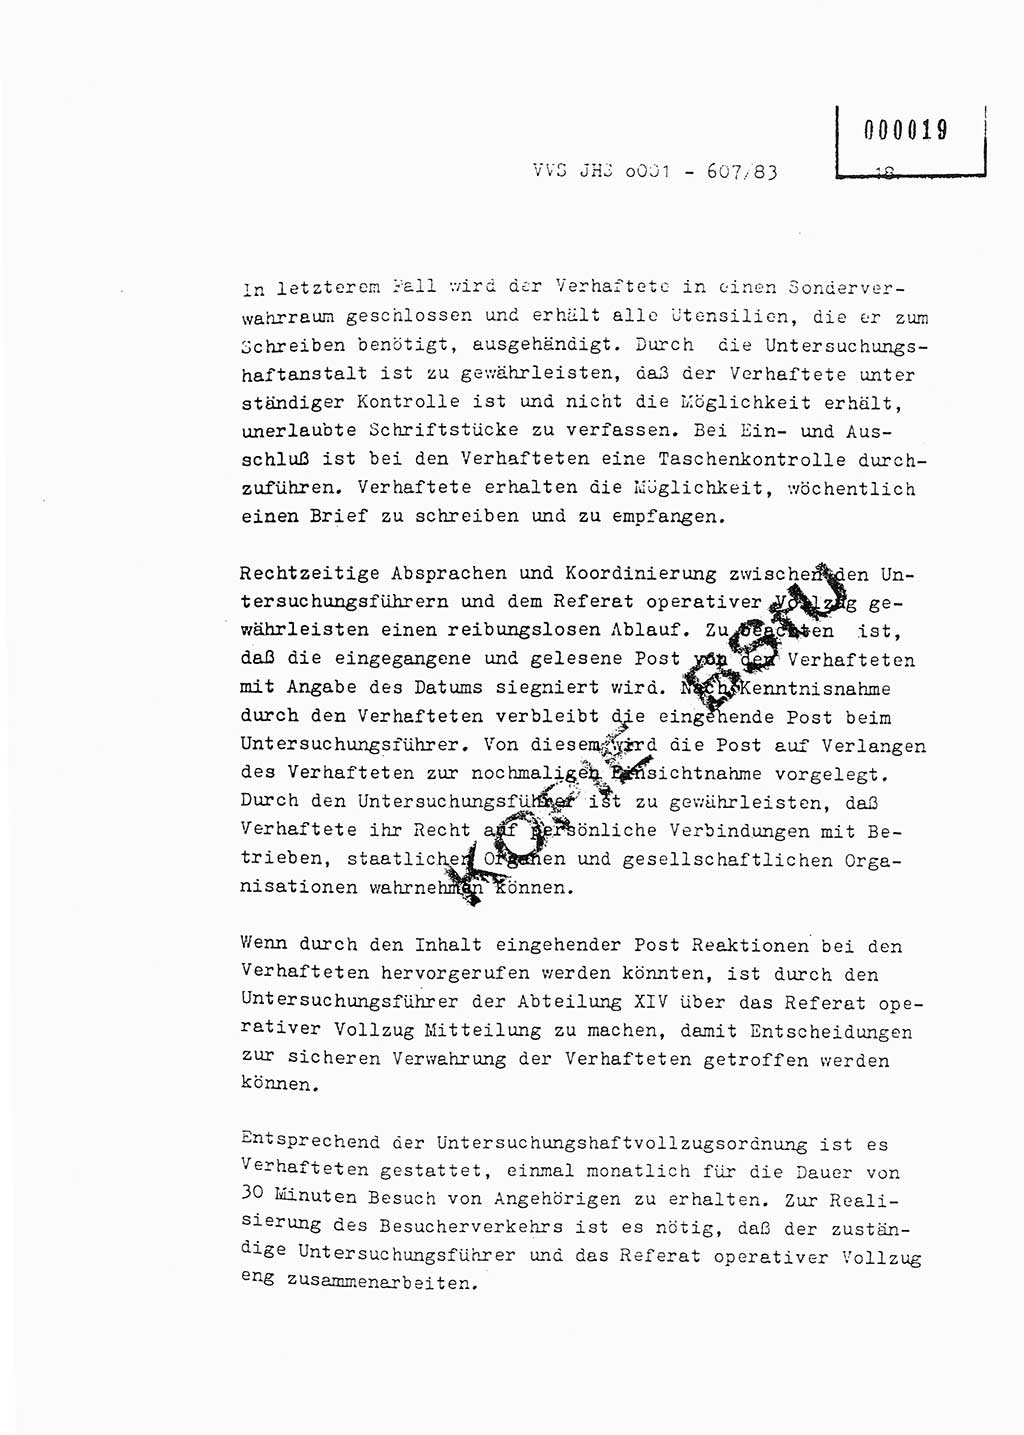 Fachschulabschlußarbeit Oberleutnant Hans-Joachim Saltmann (BV Rostock Abt. ⅩⅣ), Ministerium für Staatssicherheit (MfS) [Deutsche Demokratische Republik (DDR)], Juristische Hochschule (JHS), Vertrauliche Verschlußsache (VVS) o001-607/83, Potsdam 1983, Seite 18 (FS-Abschl.-Arb. MfS DDR JHS VVS o001-607/83 1983, S. 18)